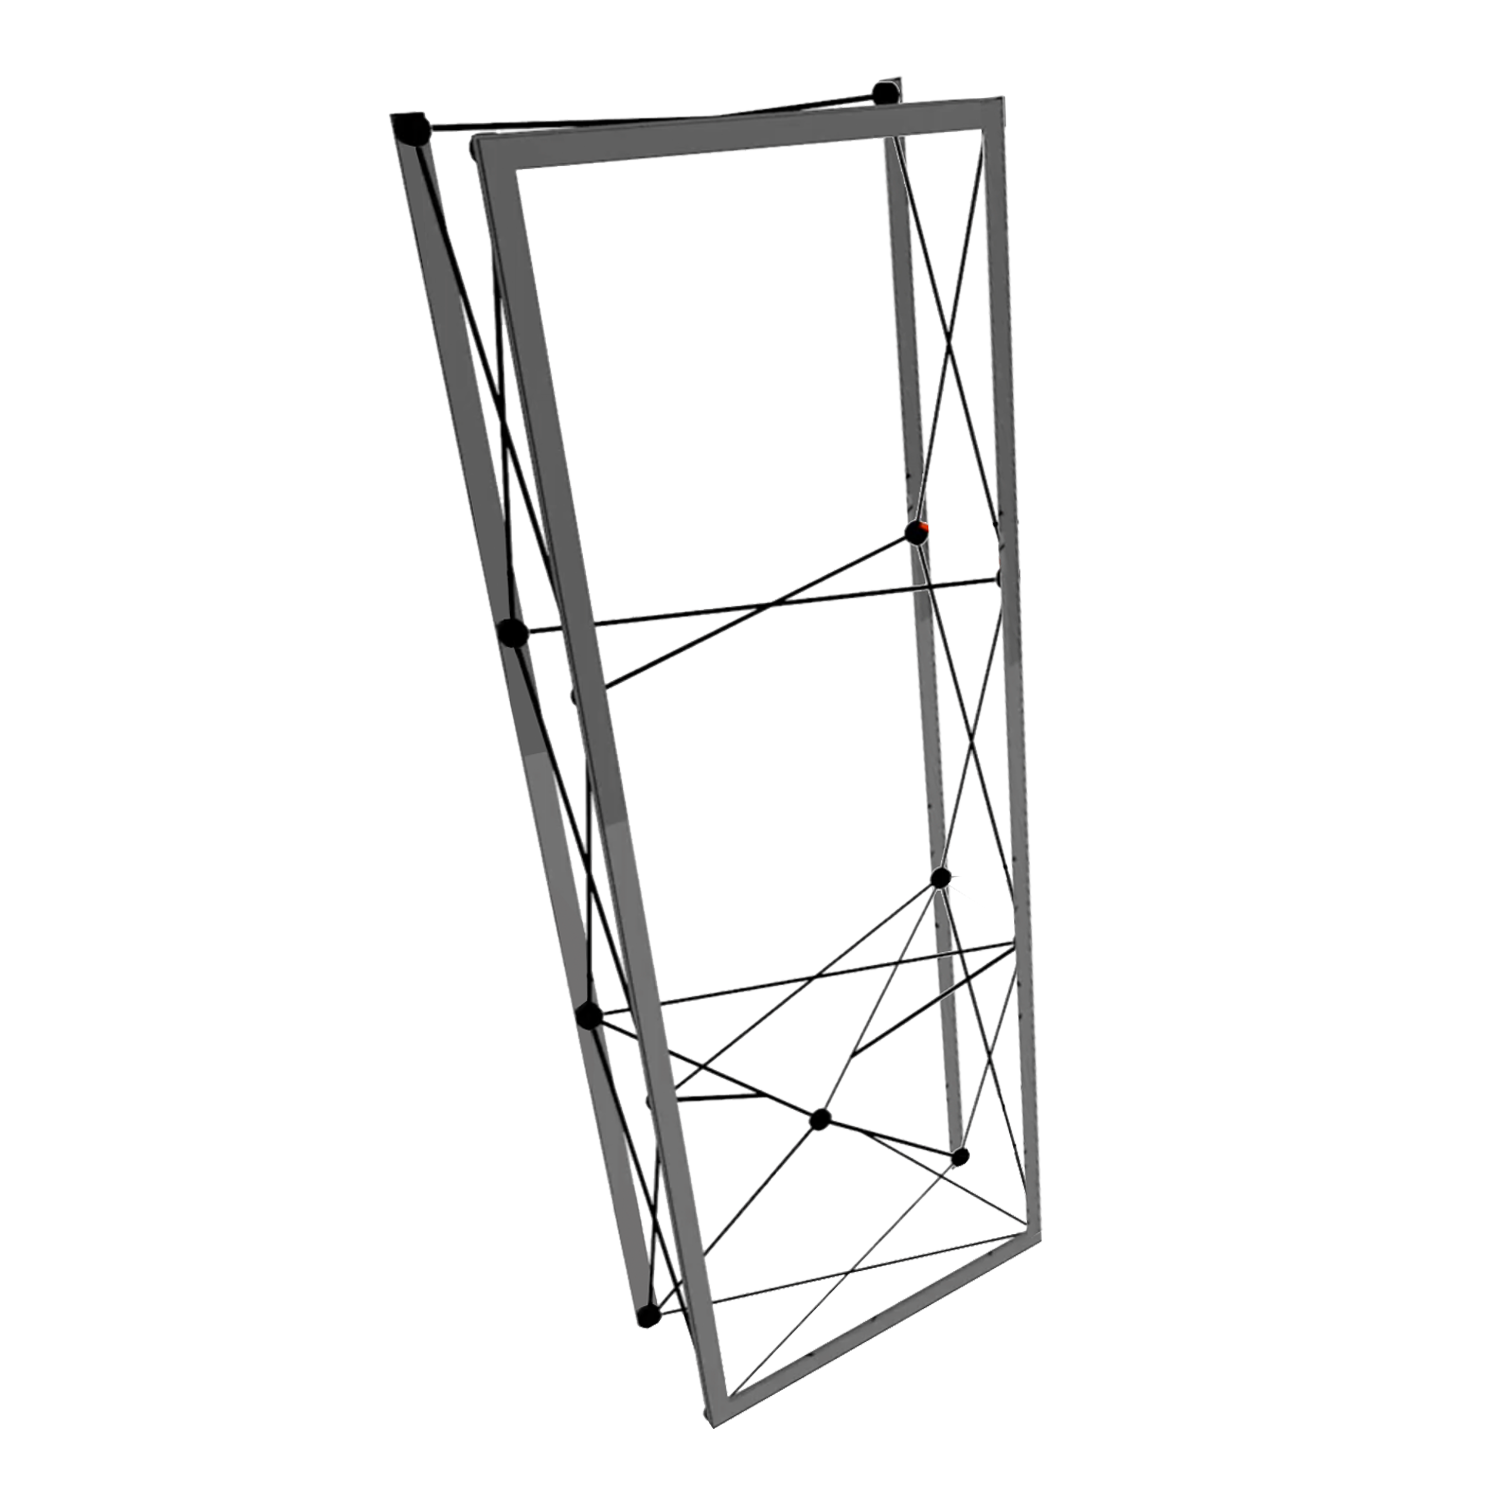 Frame Kit for 3' SPlus Single-Sided SEG Exhibit w/ End Caps (AB0546N-FX)